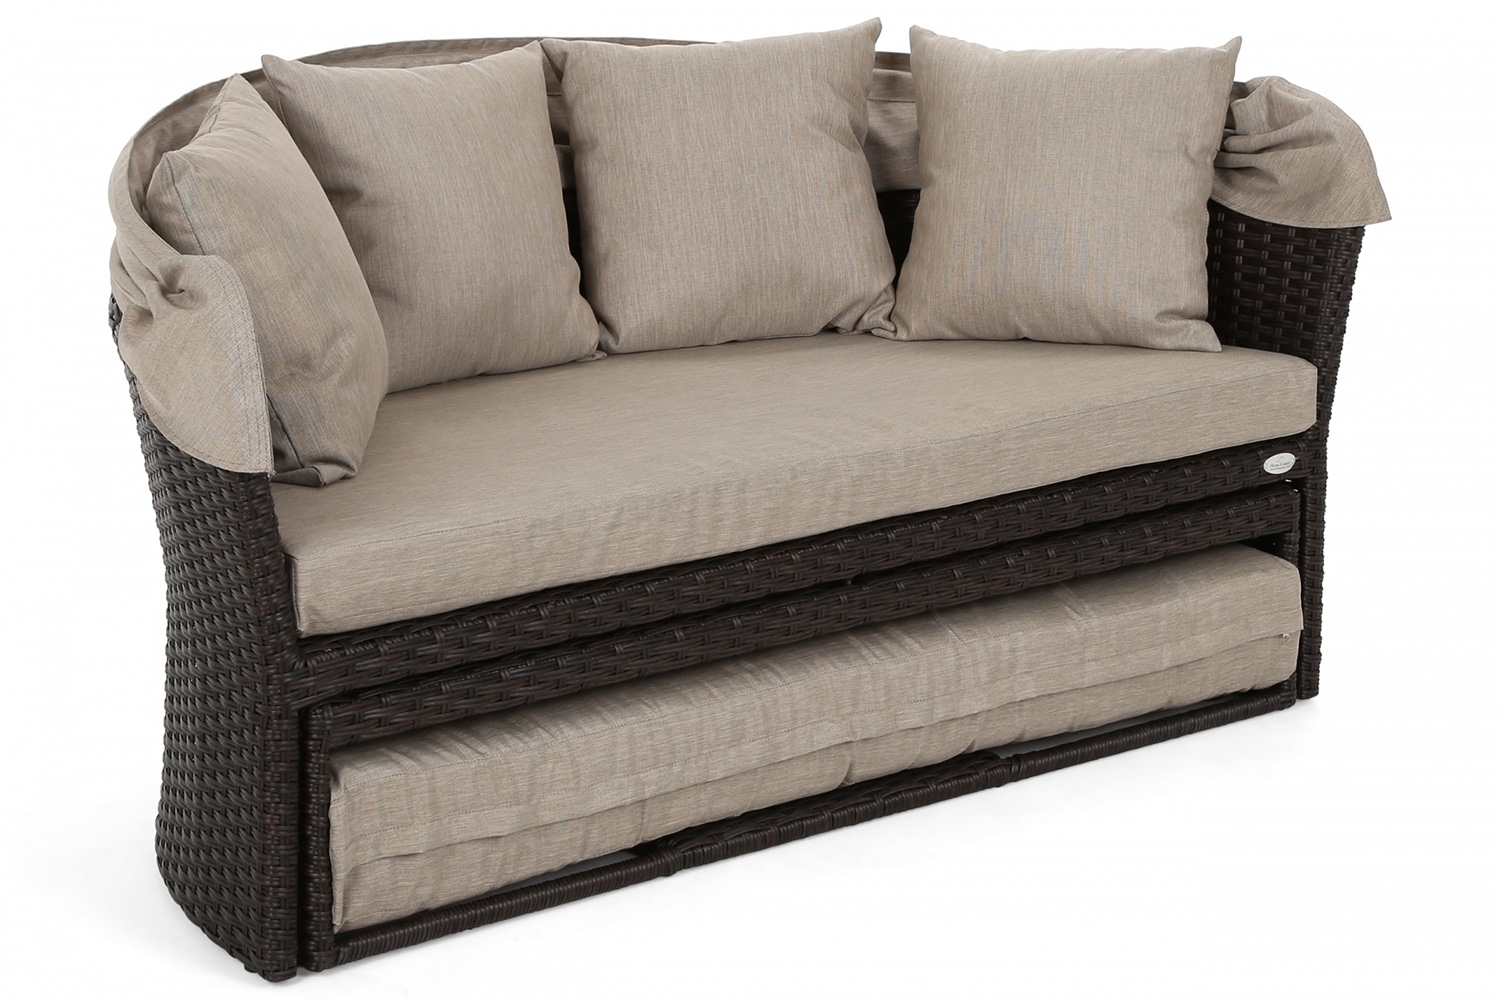  Sofa ogrodowa z baldachimem Acapulco Brown / Taupe